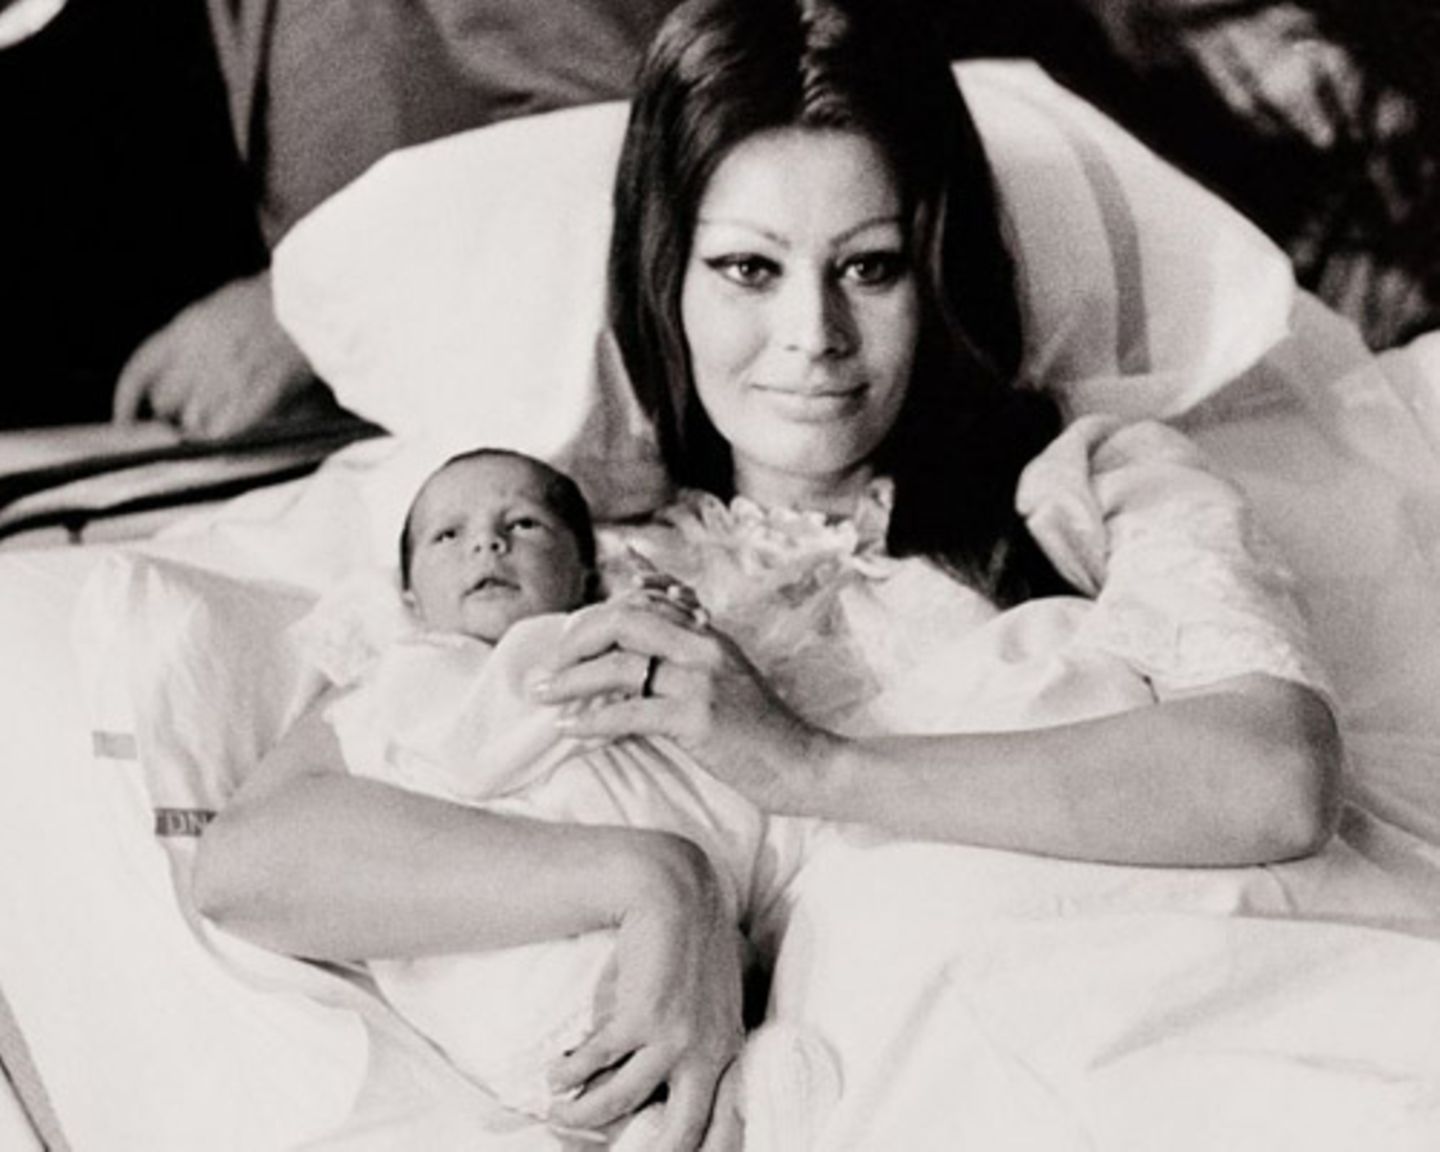 Carlo Ponti und Sophia Loren heiraten 1957 und bekommen zwei Kinder. Auf dem Foto präsentiert "Mamma Sophia" stolz ihren Sohn Carlo jr., der 1968 geboren wird.